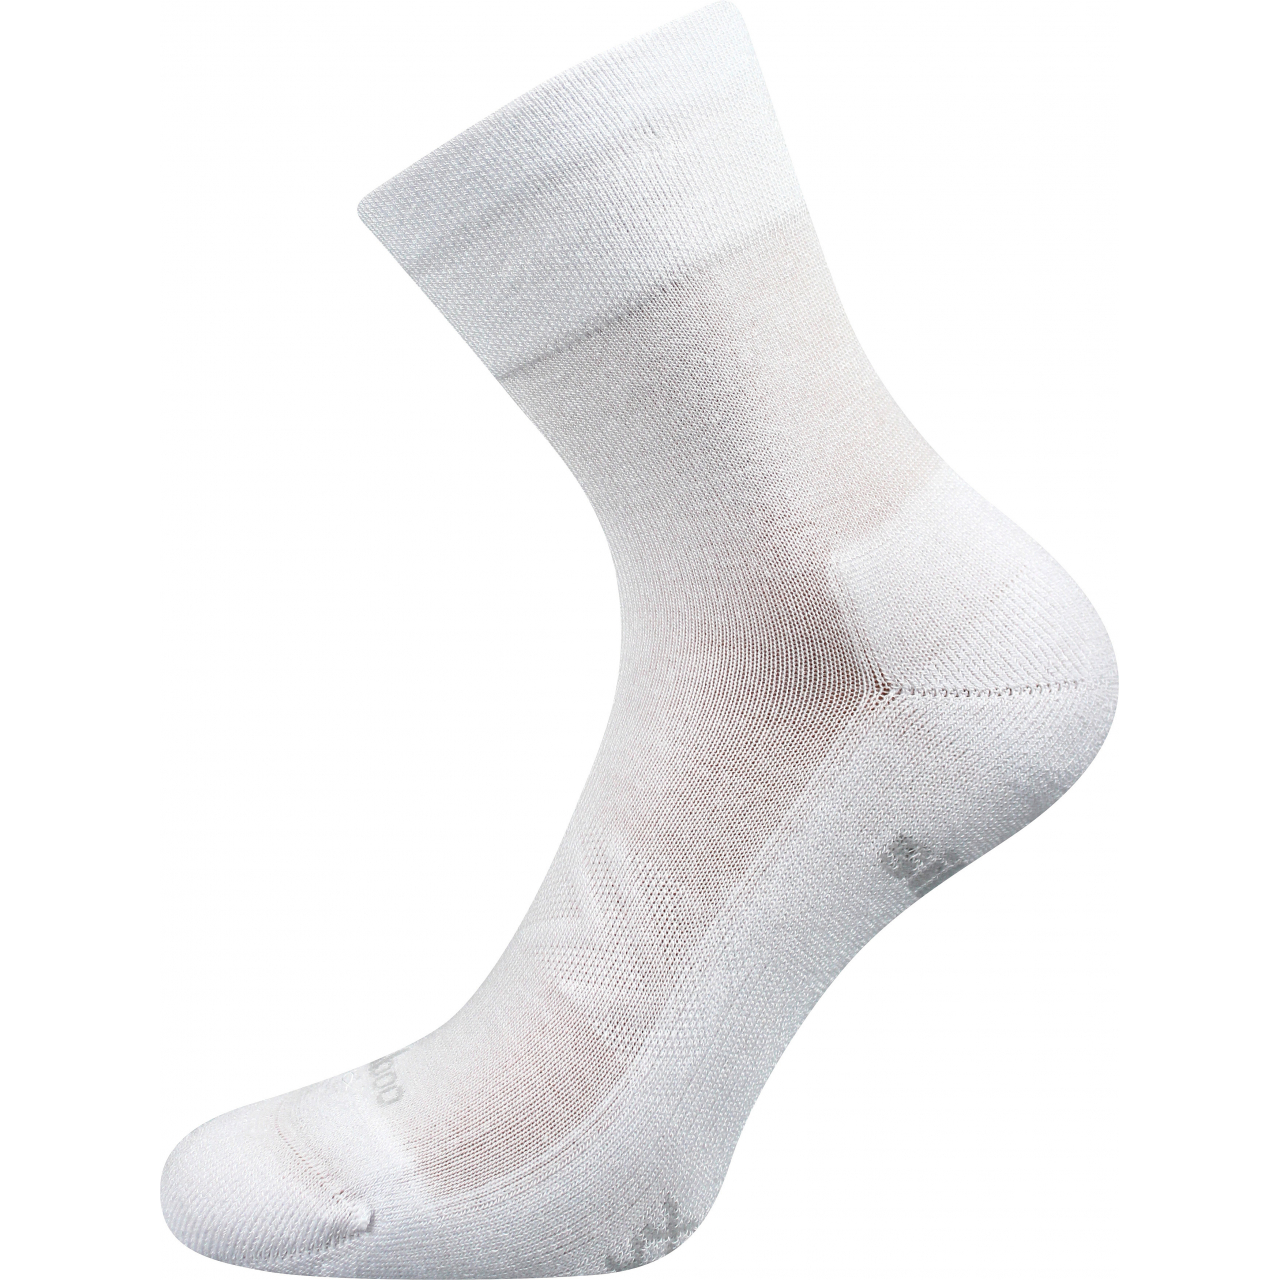 Ponožky sportovní unisex Voxx Esencis - bílé, 43-46